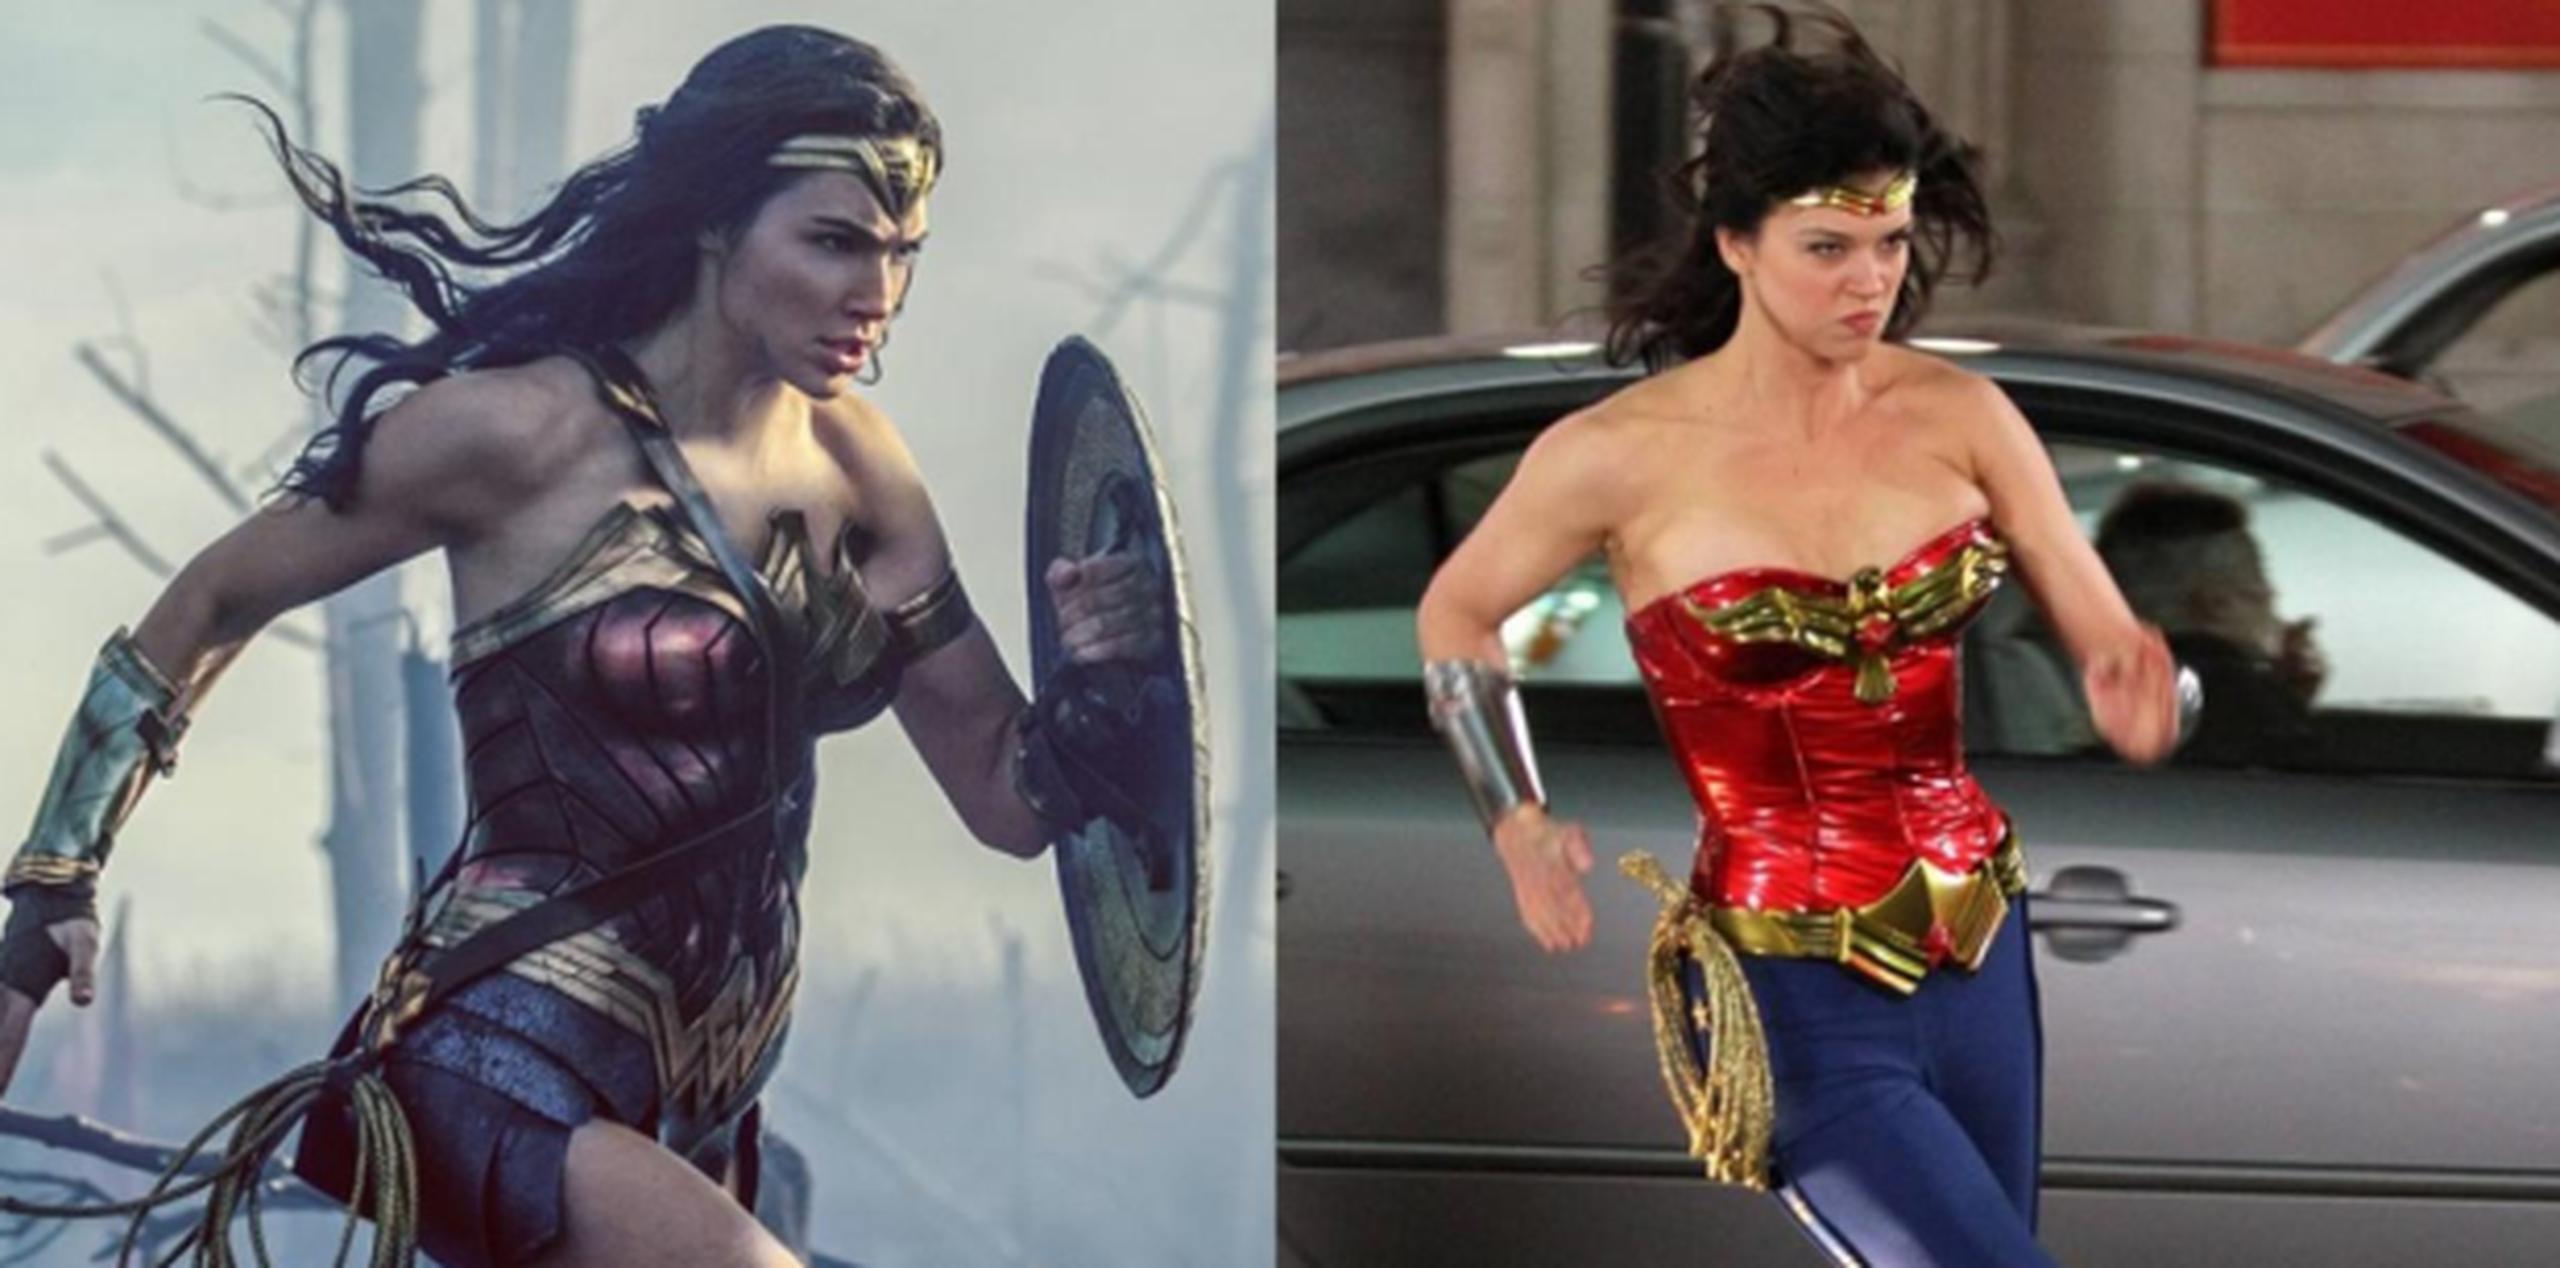 A la izquierda, escena de "Wonder Woman" de Gal Gadot. Derecha, escena de 2011 de la serie televisiva de la superheróina protagonizado por Adrianne Palicki. (Capturas)